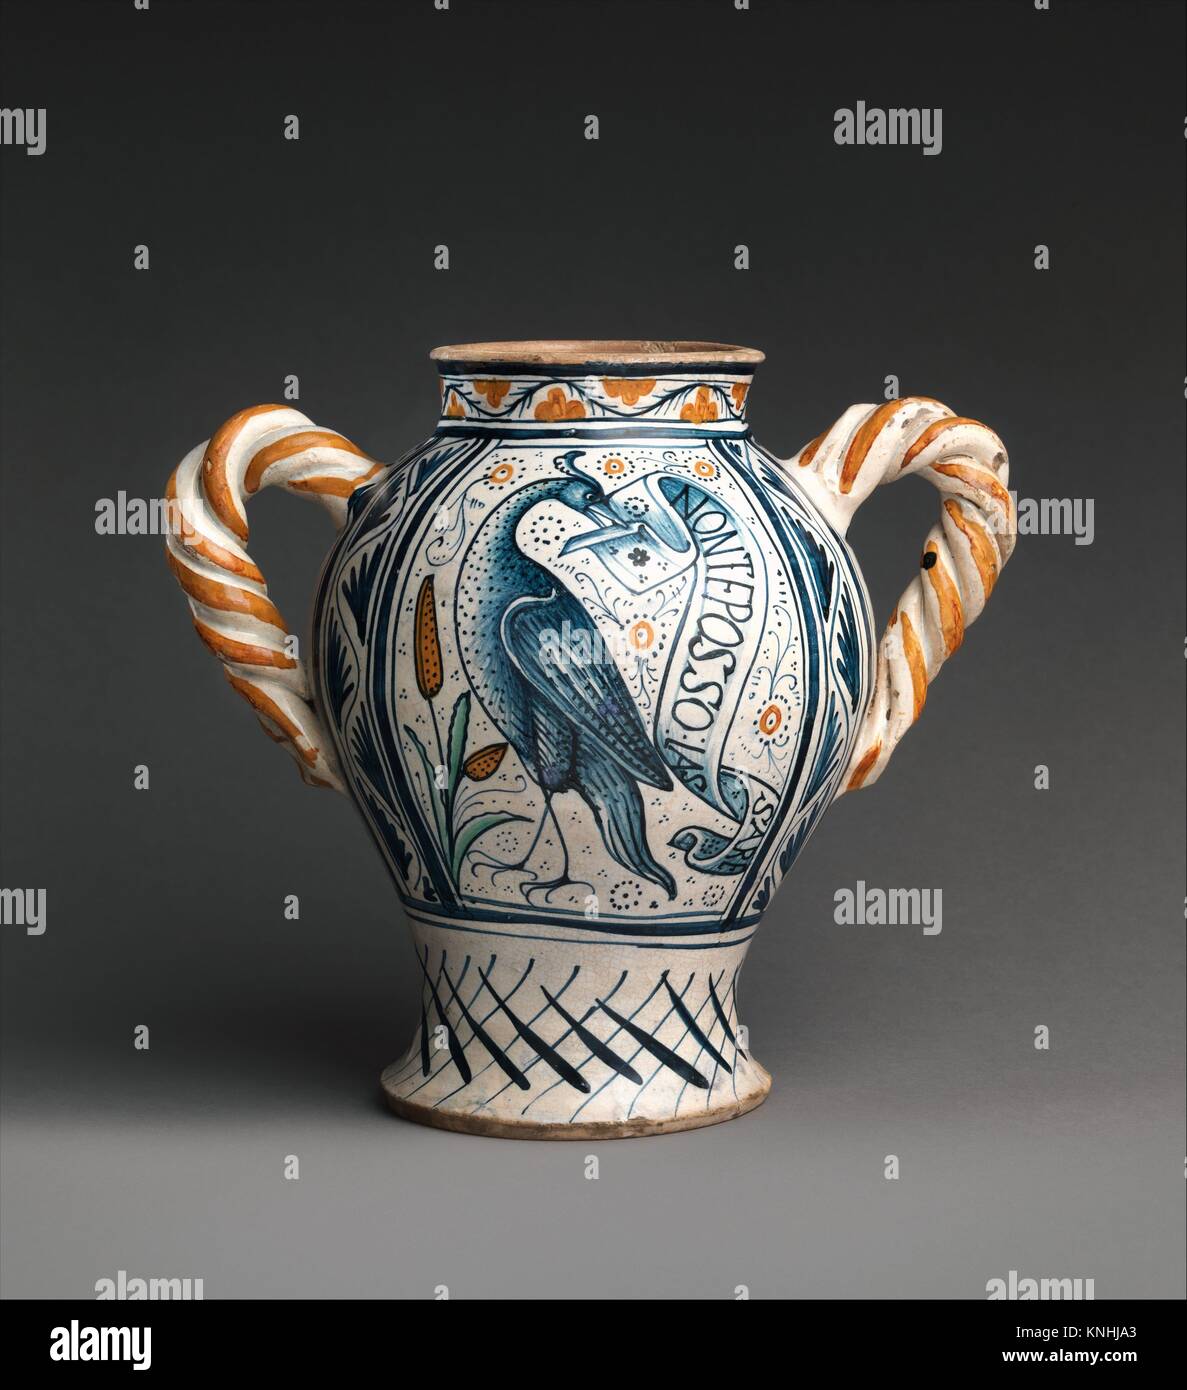 Vase mit Liebe Motive. Datum: Ca. 1470-90; Kultur: Italienisch, Deruta;  Medium: Majolika (tin-glasiert Steingut); Abmessungen: Insgesamt  (bestätigt): 10 Stockfotografie - Alamy